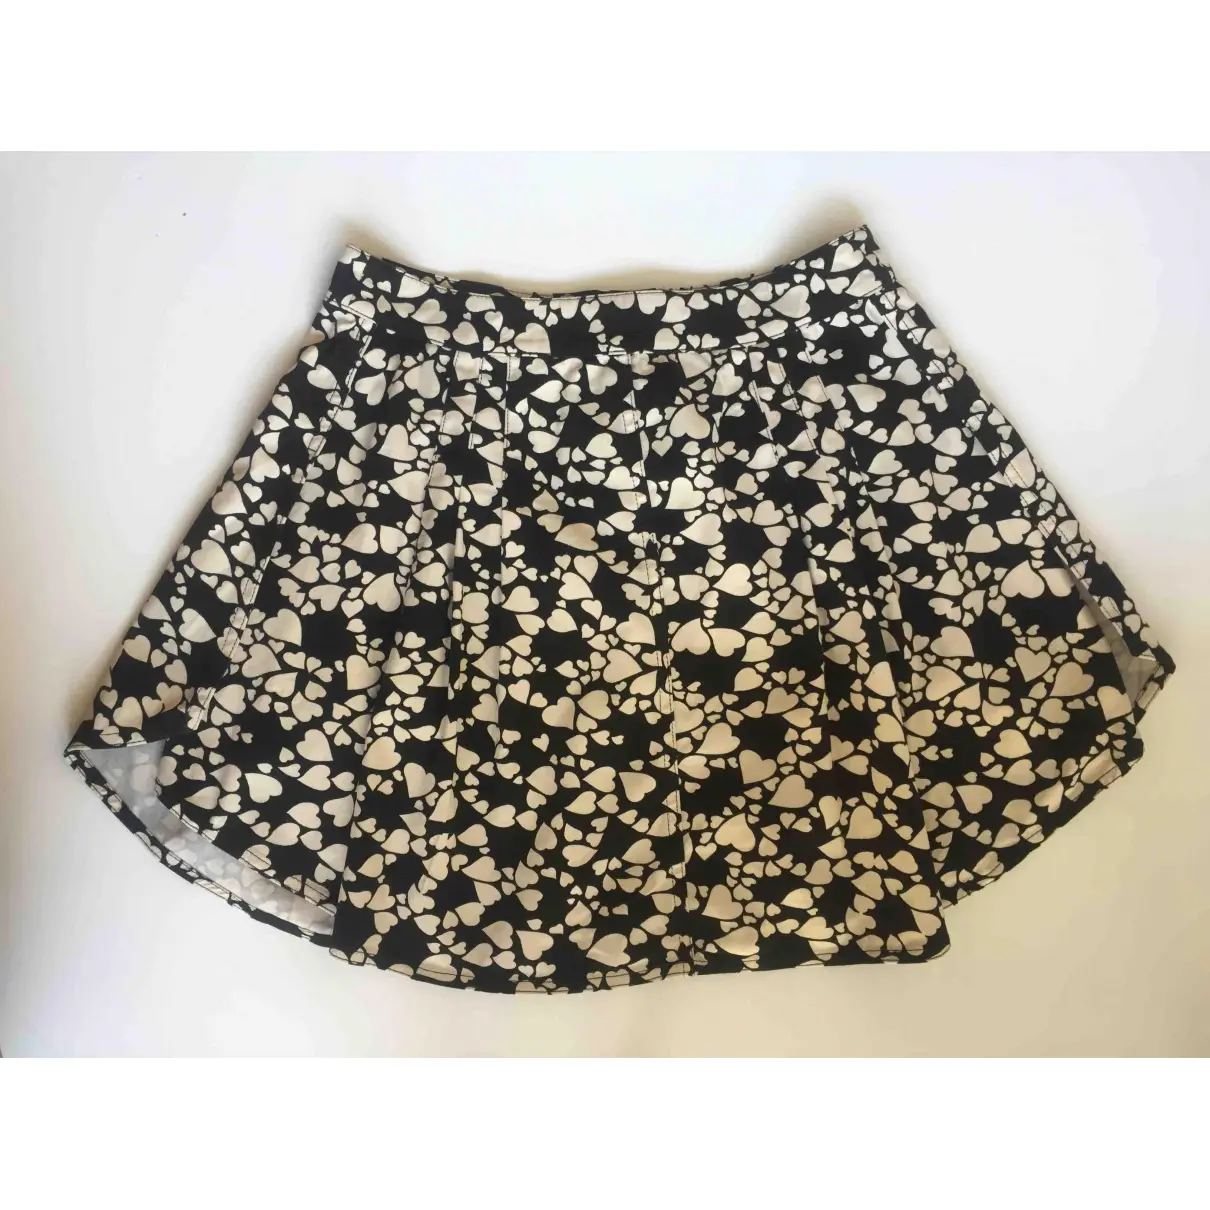 Buy Moschino Cheap And Chic Mini skirt online